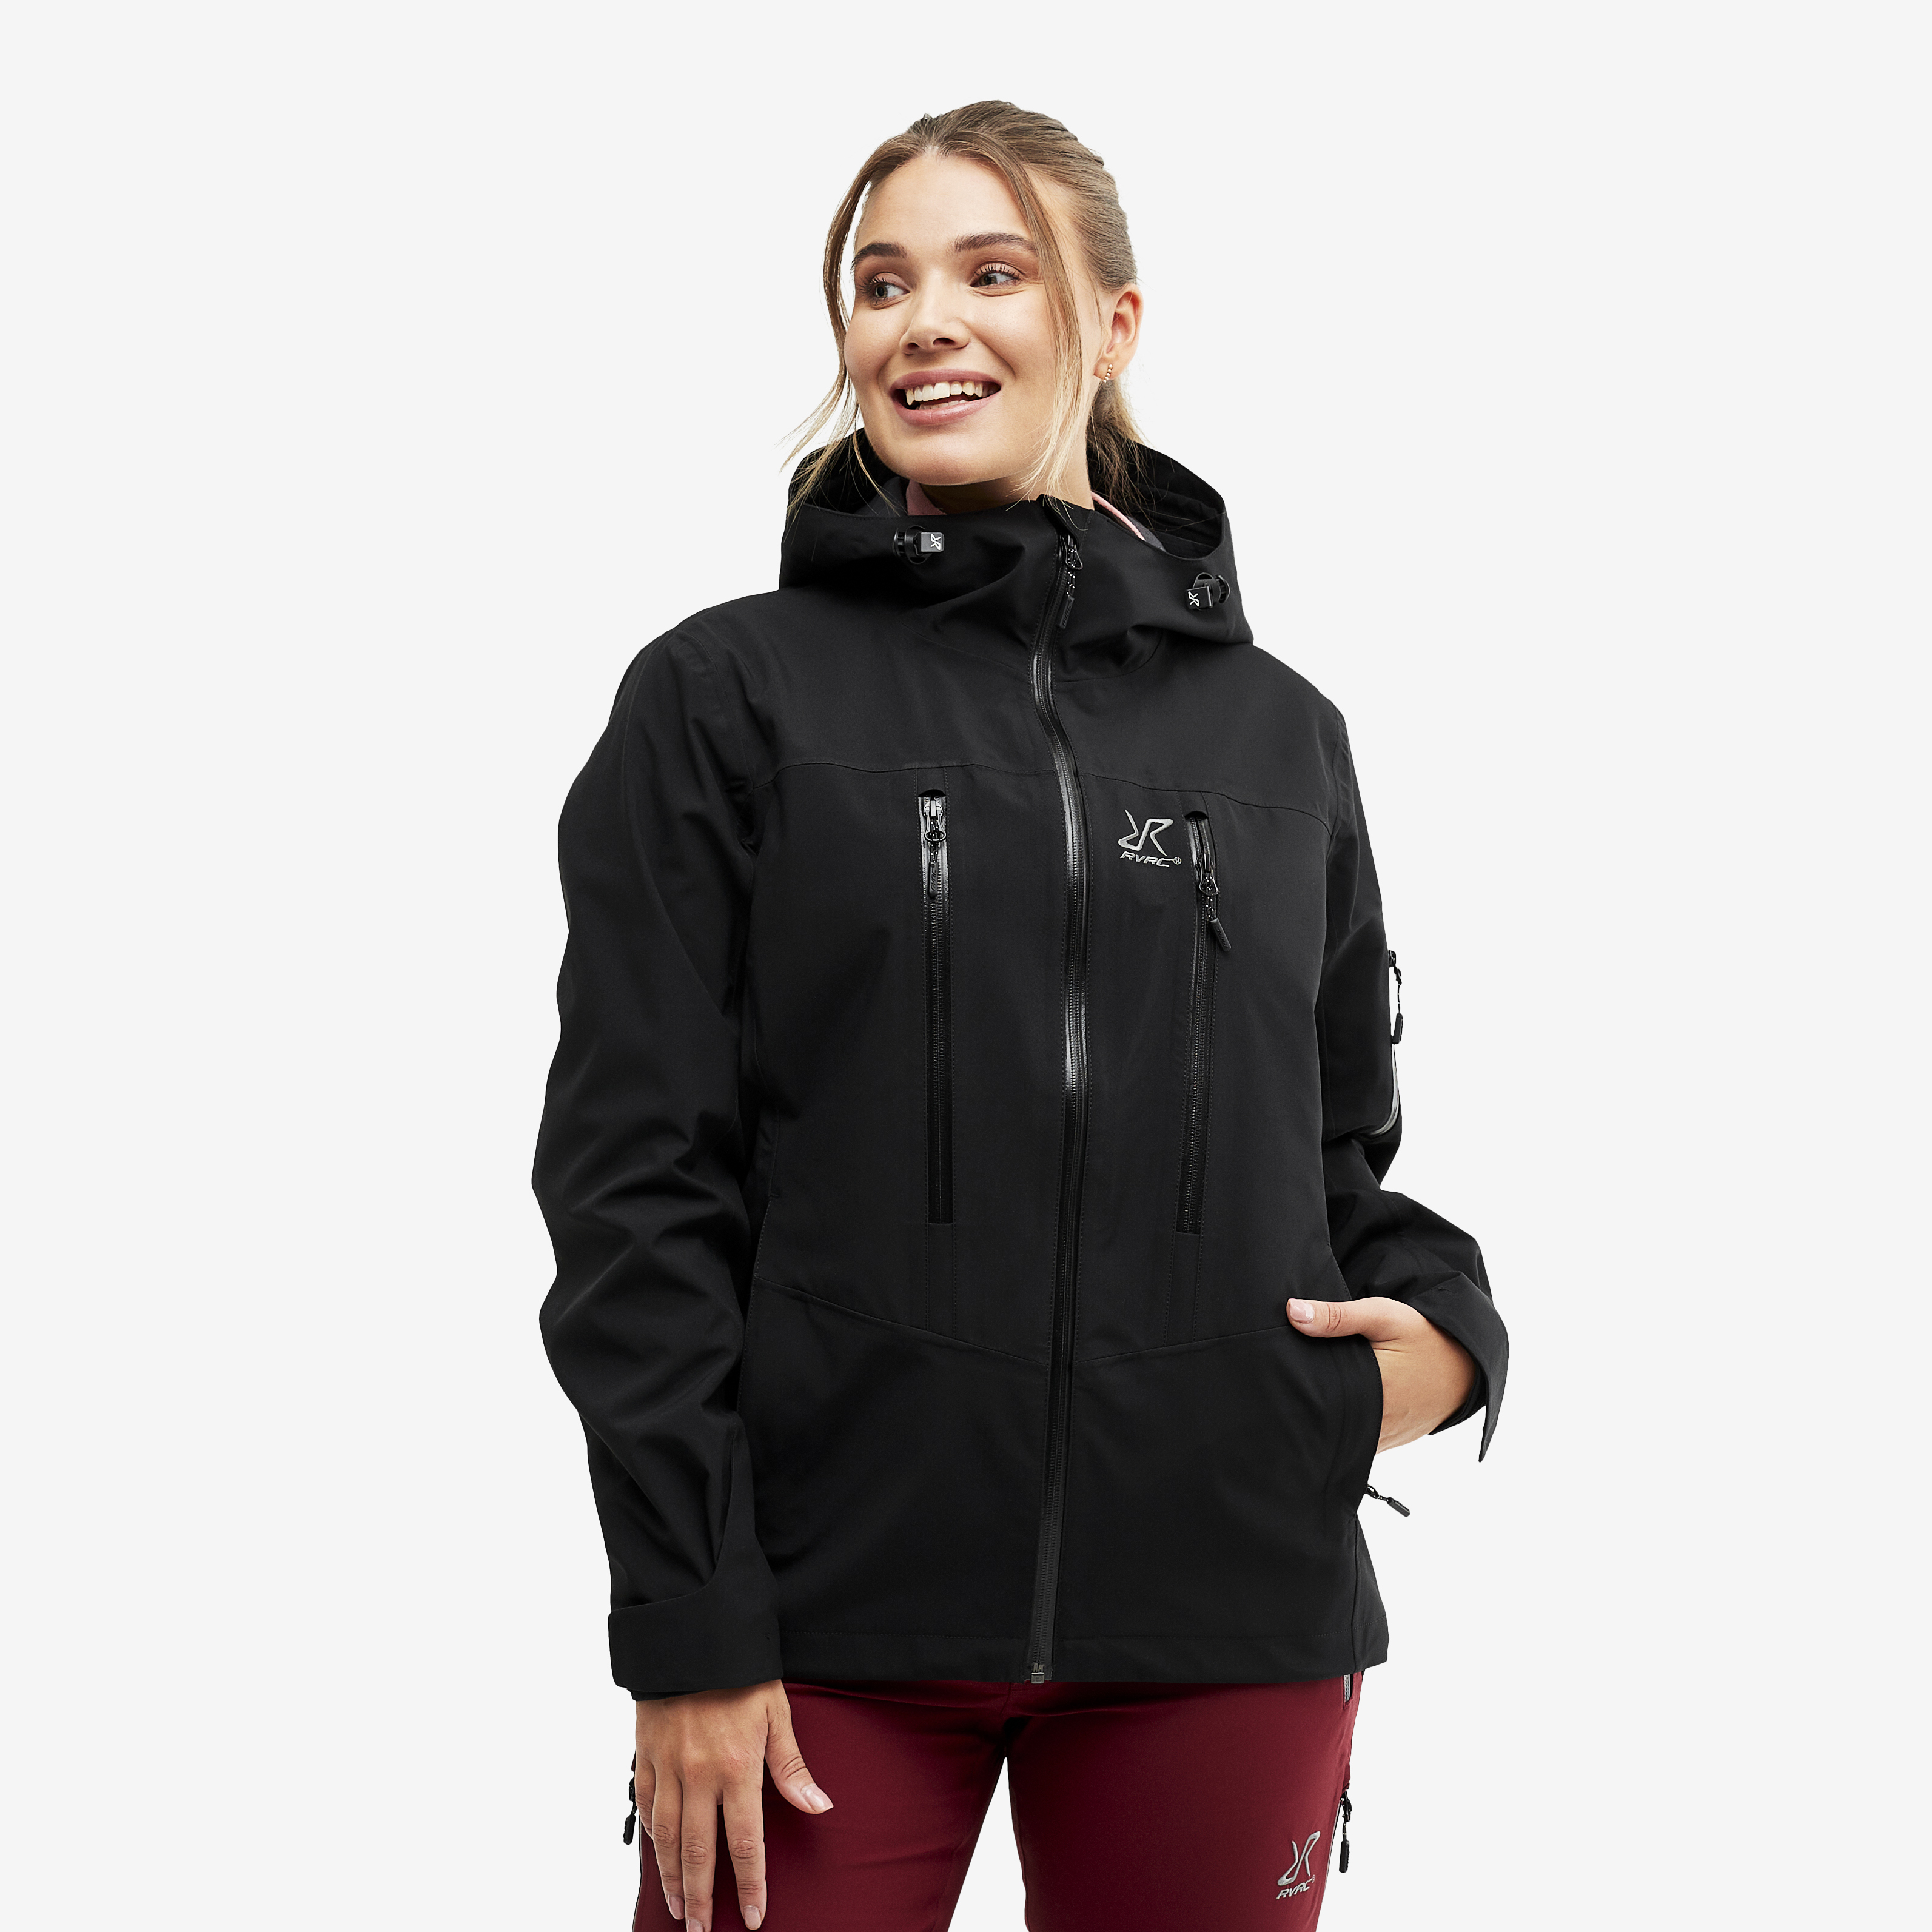 Whisper rain jacket for women in black